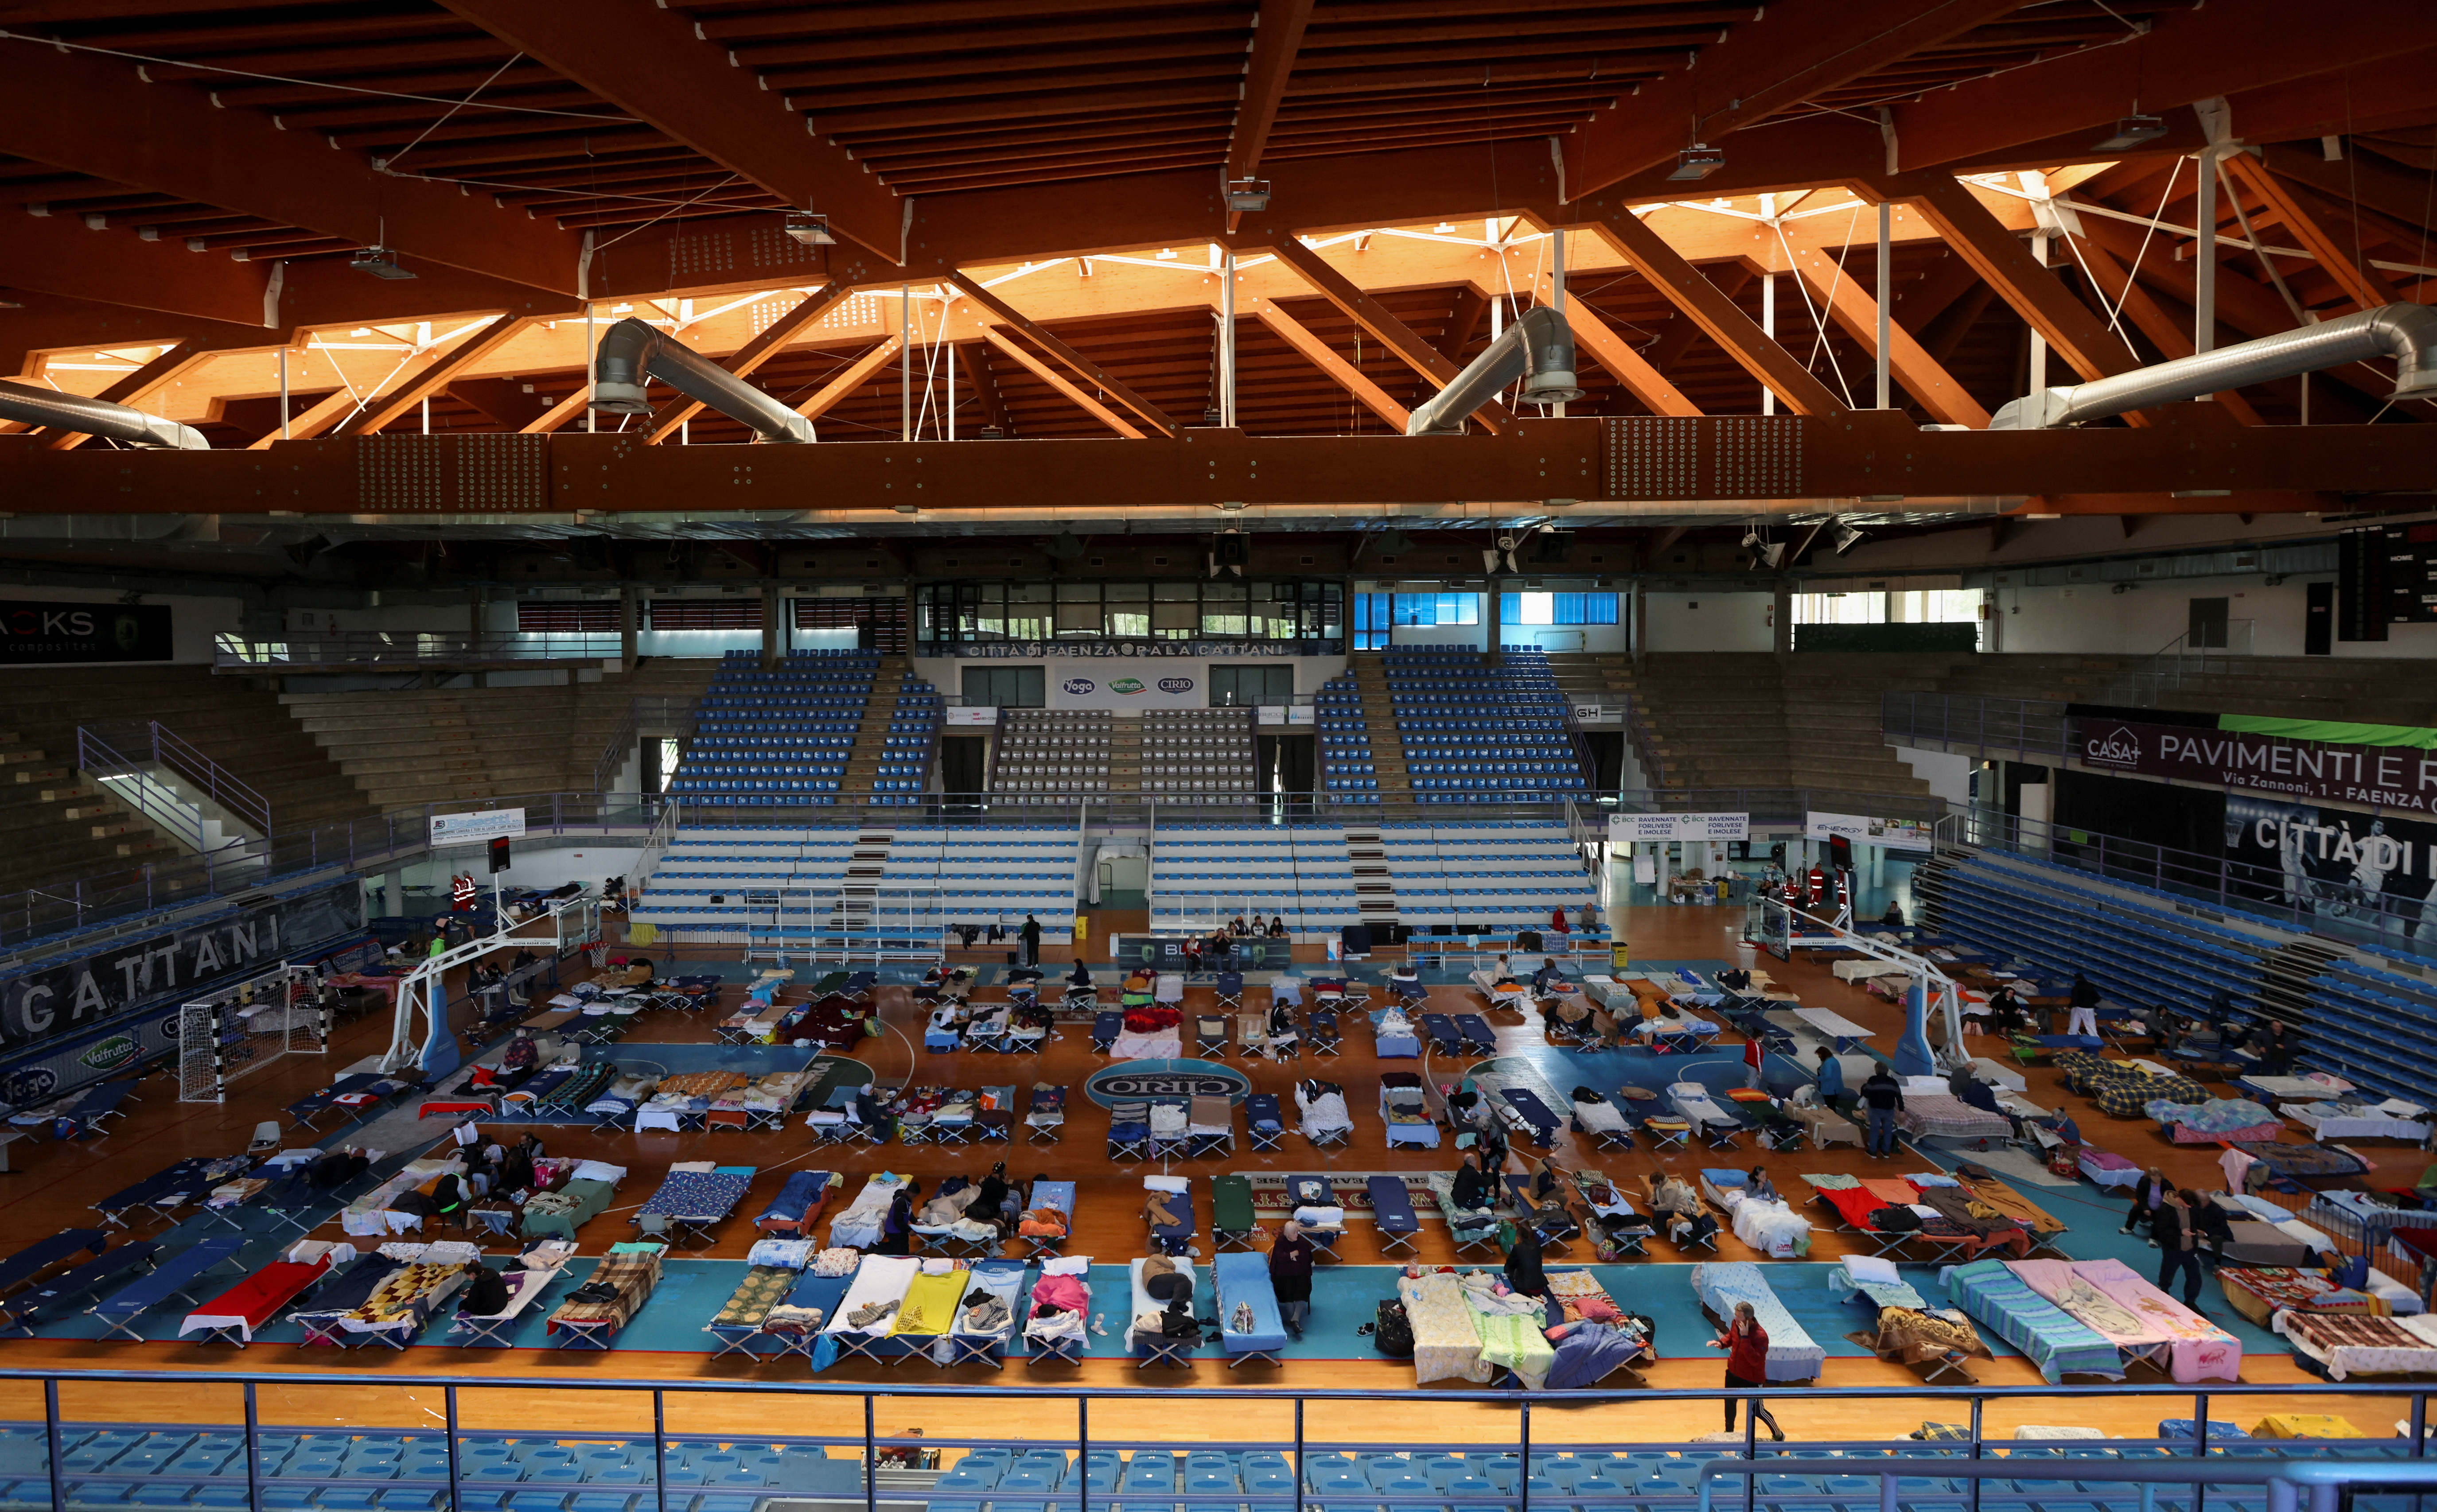 El centro deportivo PalaCattani en Faenza, Italia, fue adaptado como refugio para personas desplazadas tras las fuertes lluvias que azotaron la región de Emilia Romagna 18 de mayo de 2023 (REUTERS/Claudia Greco)